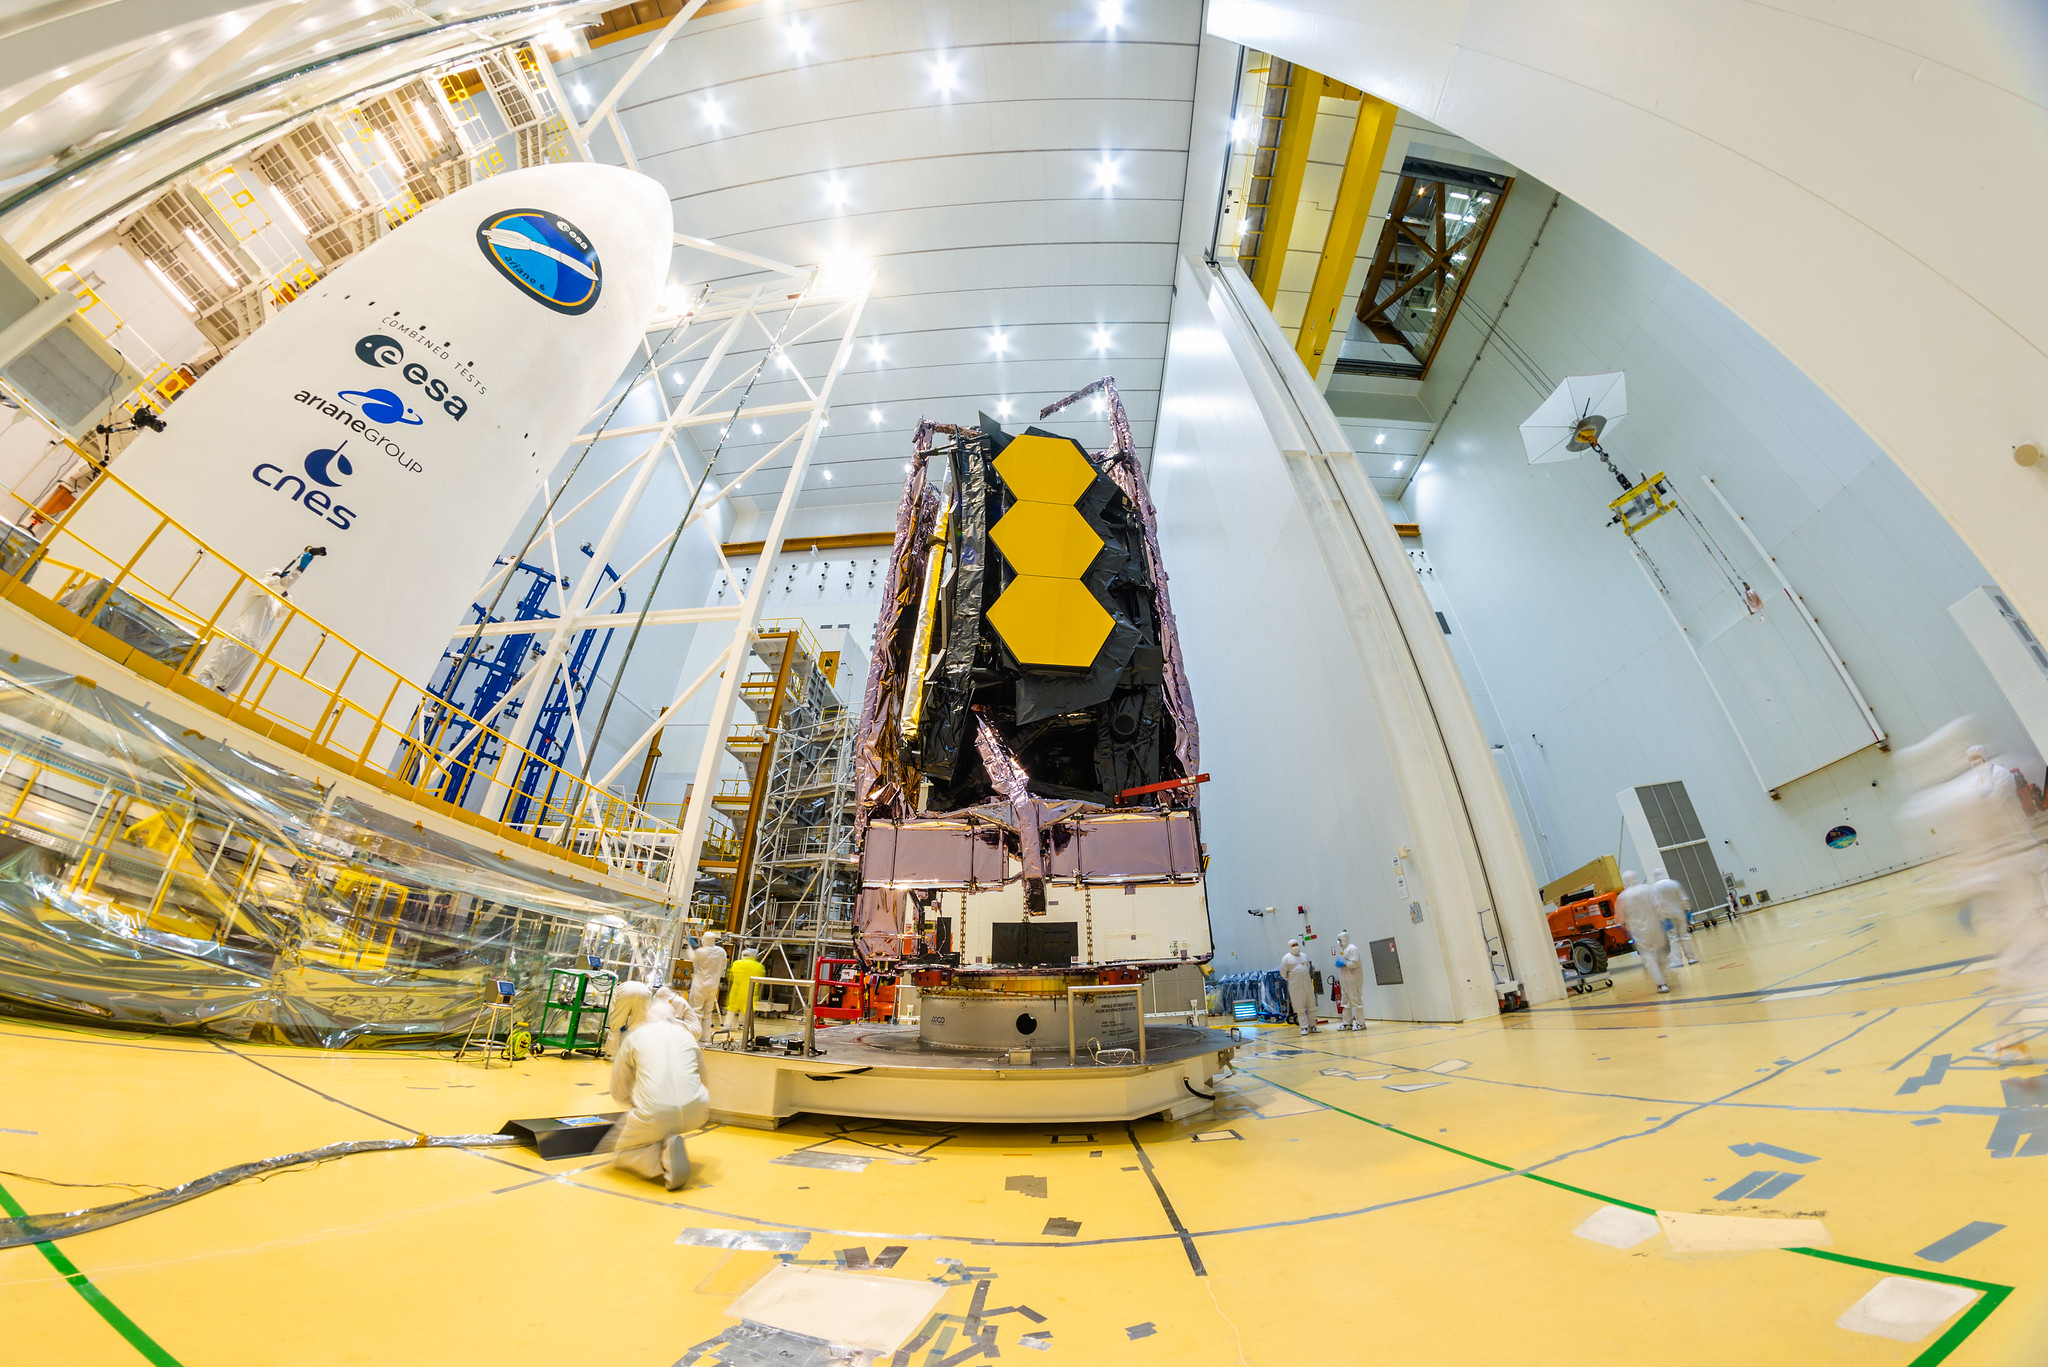 Sabato 11 dicembre, il James Webb Space Telescope della NASA è stato messo in sicurezza su un razzo Ariane 5 che lo lancerà nello spazio dallo spazioporto europeo nella Guyana francese.